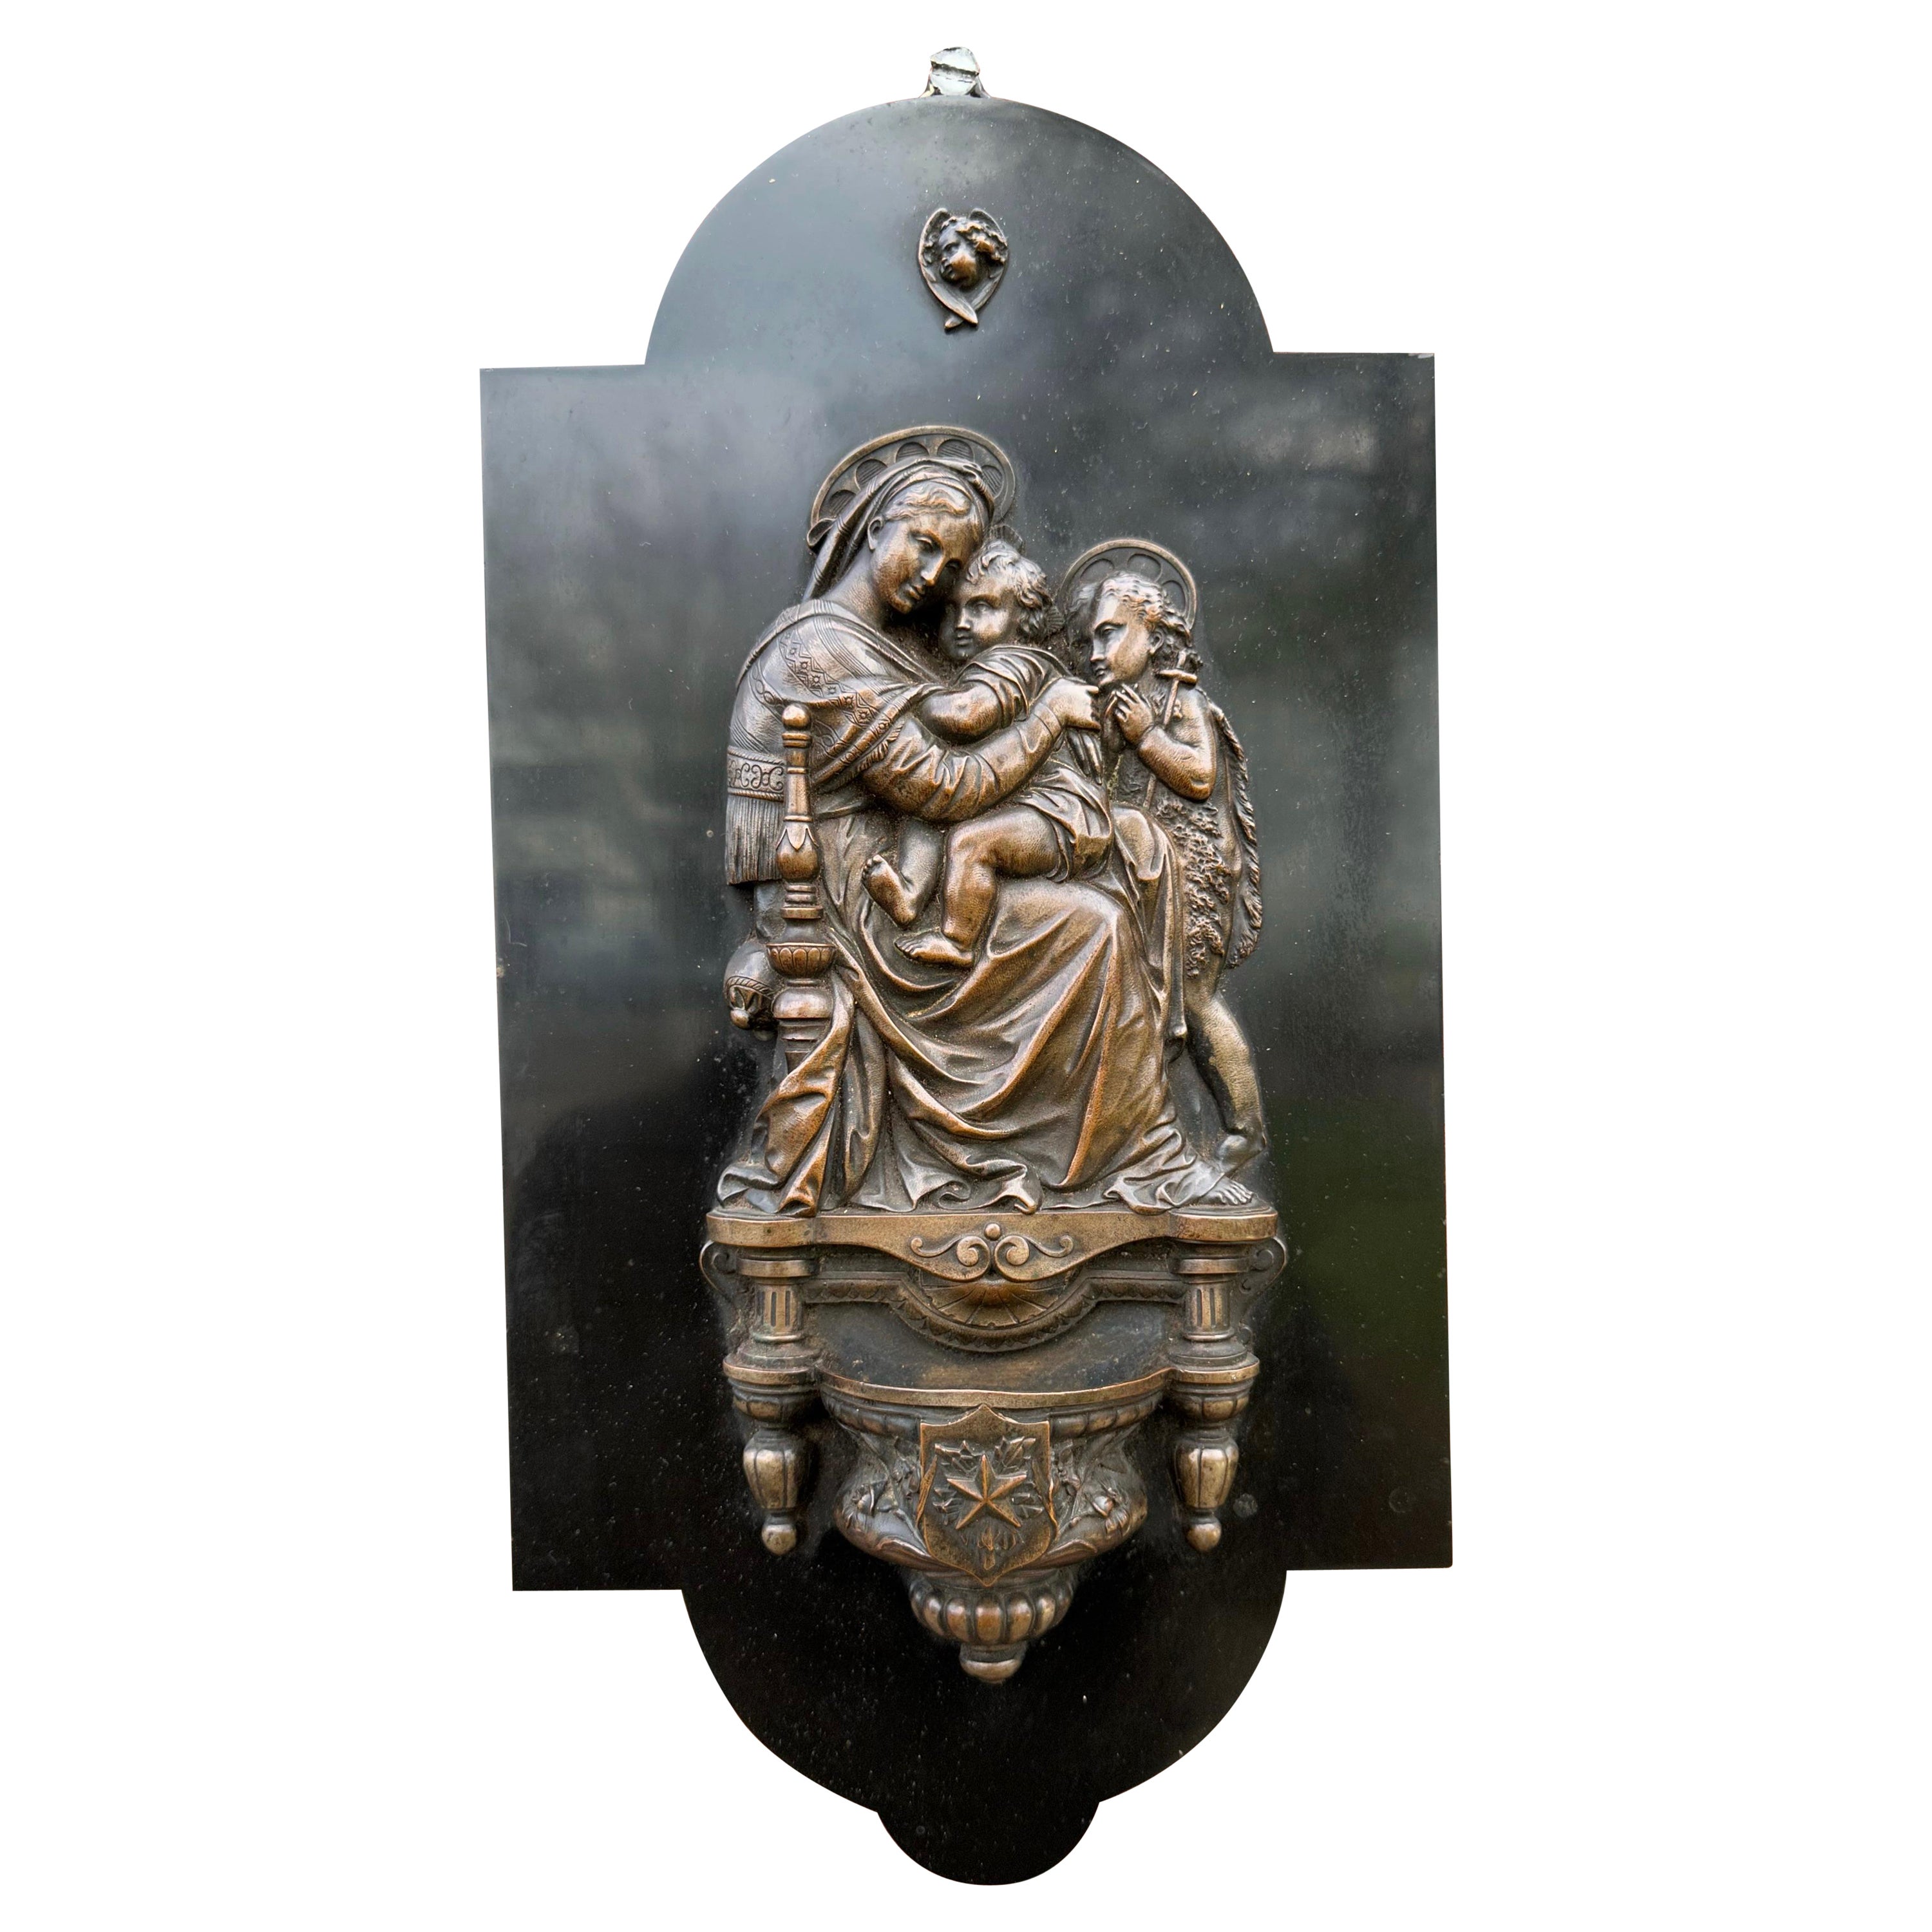 Raffaello's Madonna Della Seggiola Wandtafel aus Bronze und Marmor mit Heiligem Wasserbecken